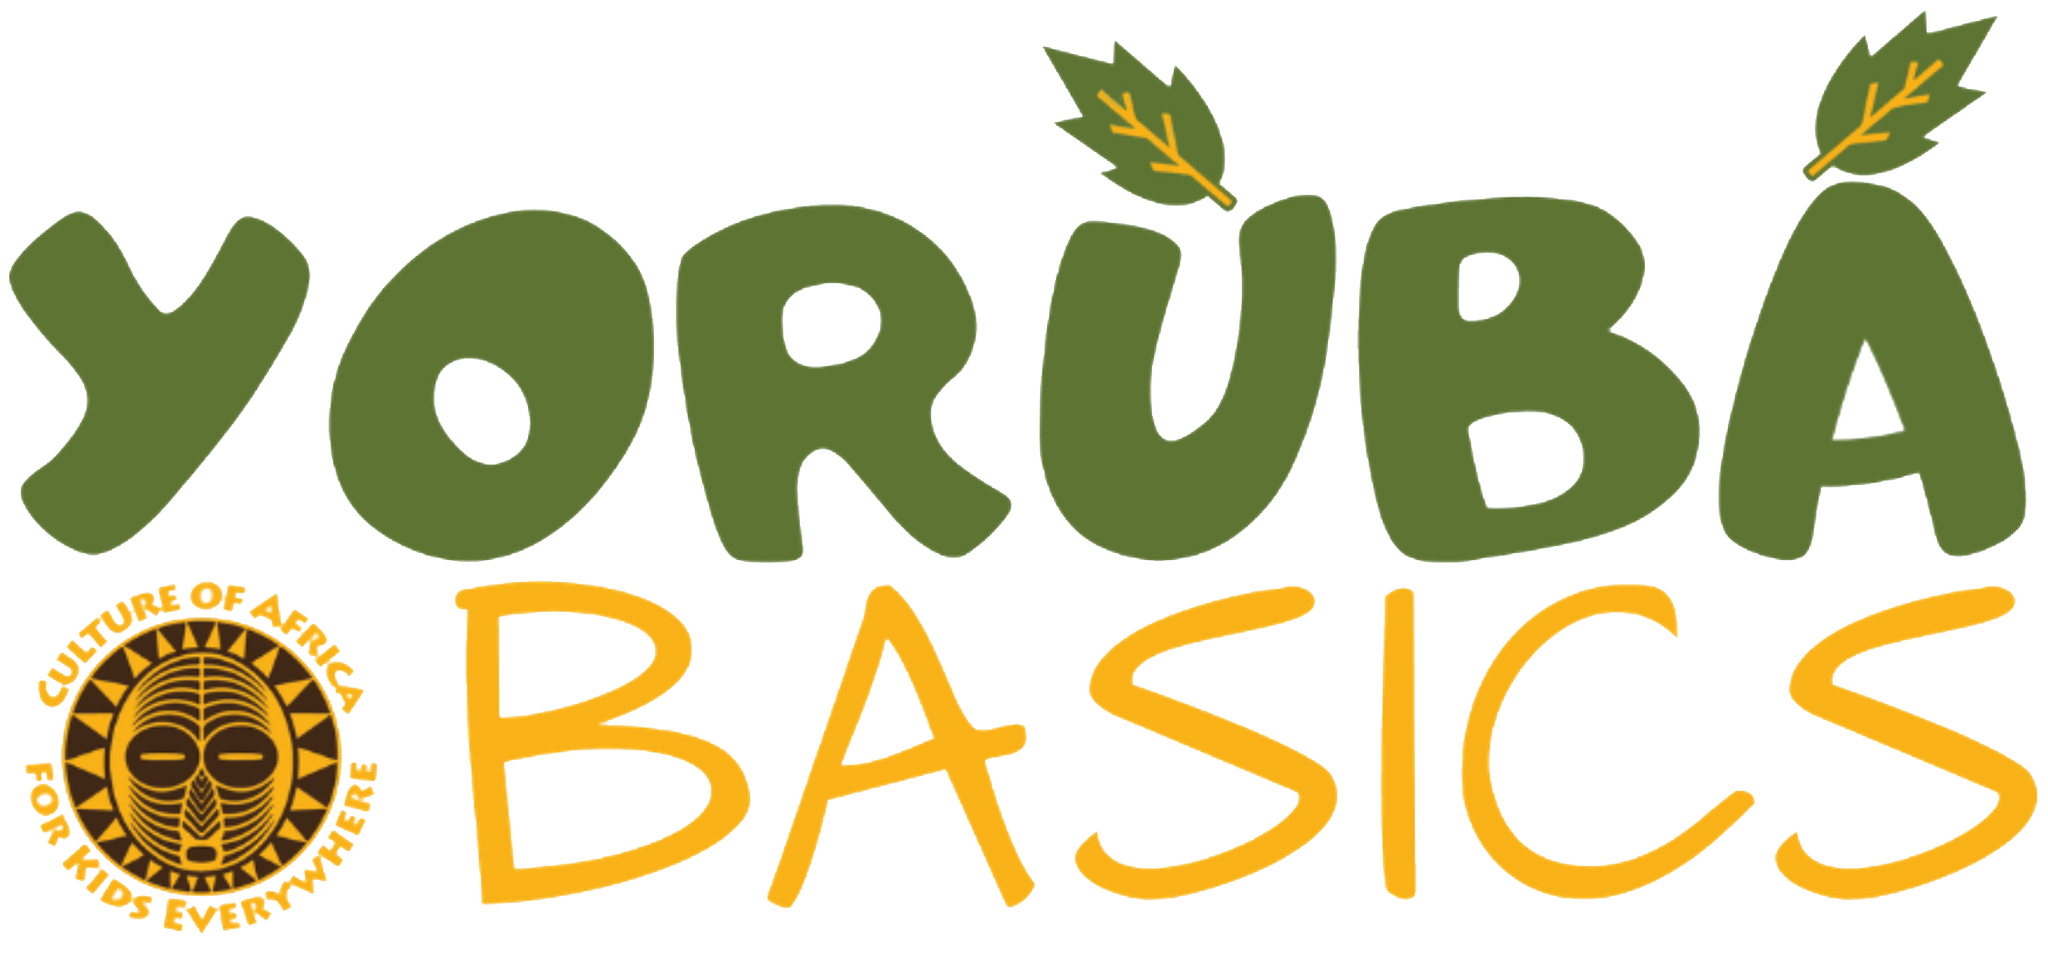 Yoruba Basics Shop